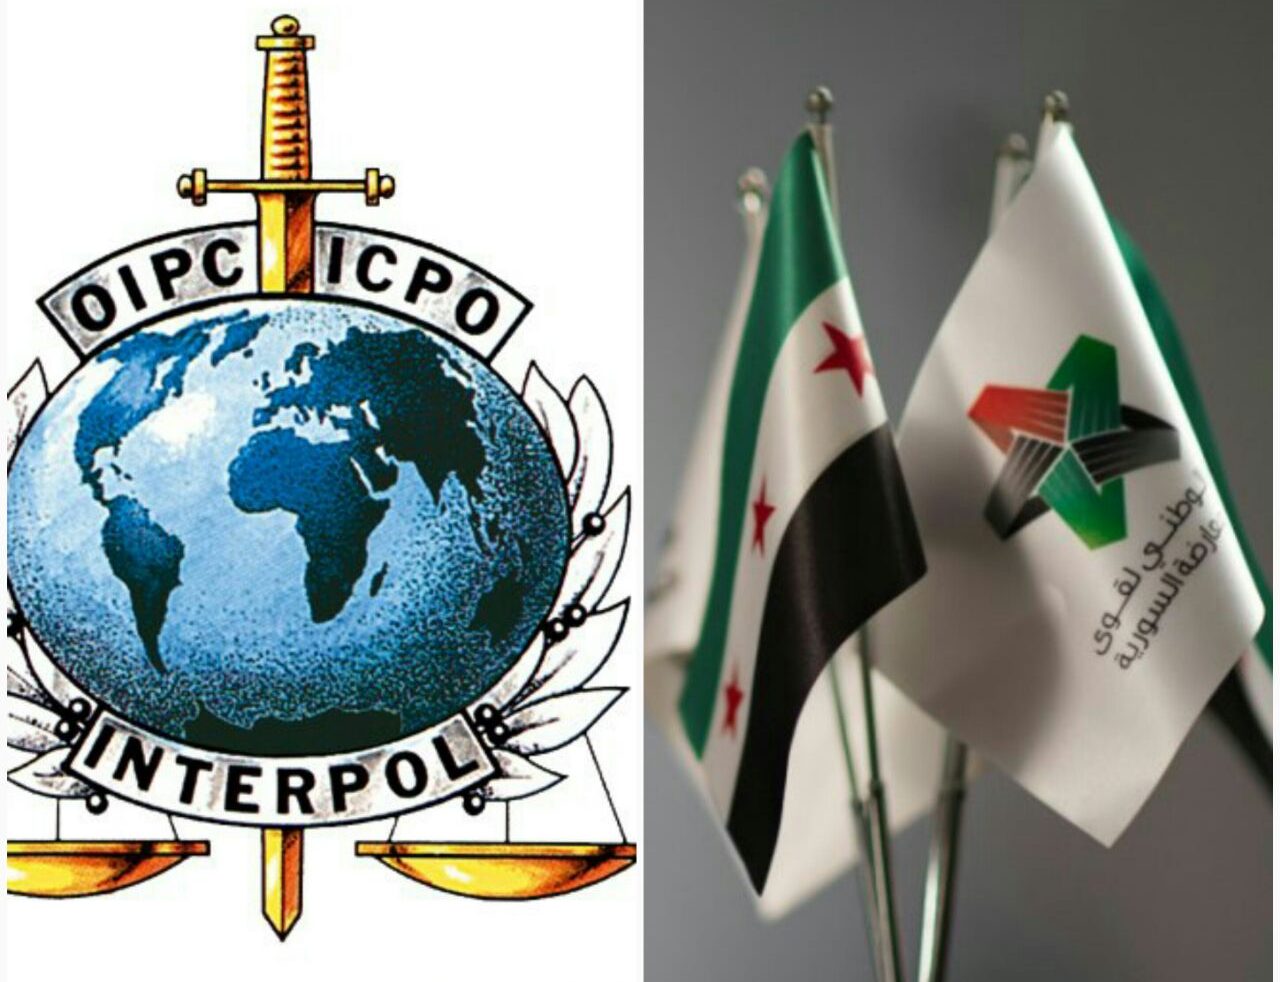 علّق الائتلاف الوطني السوري على قرار الإنتربول الدولي الأخير حول إعادة افتتاح مكتبه لدى نظام الأسد في العاصمة دمشق.